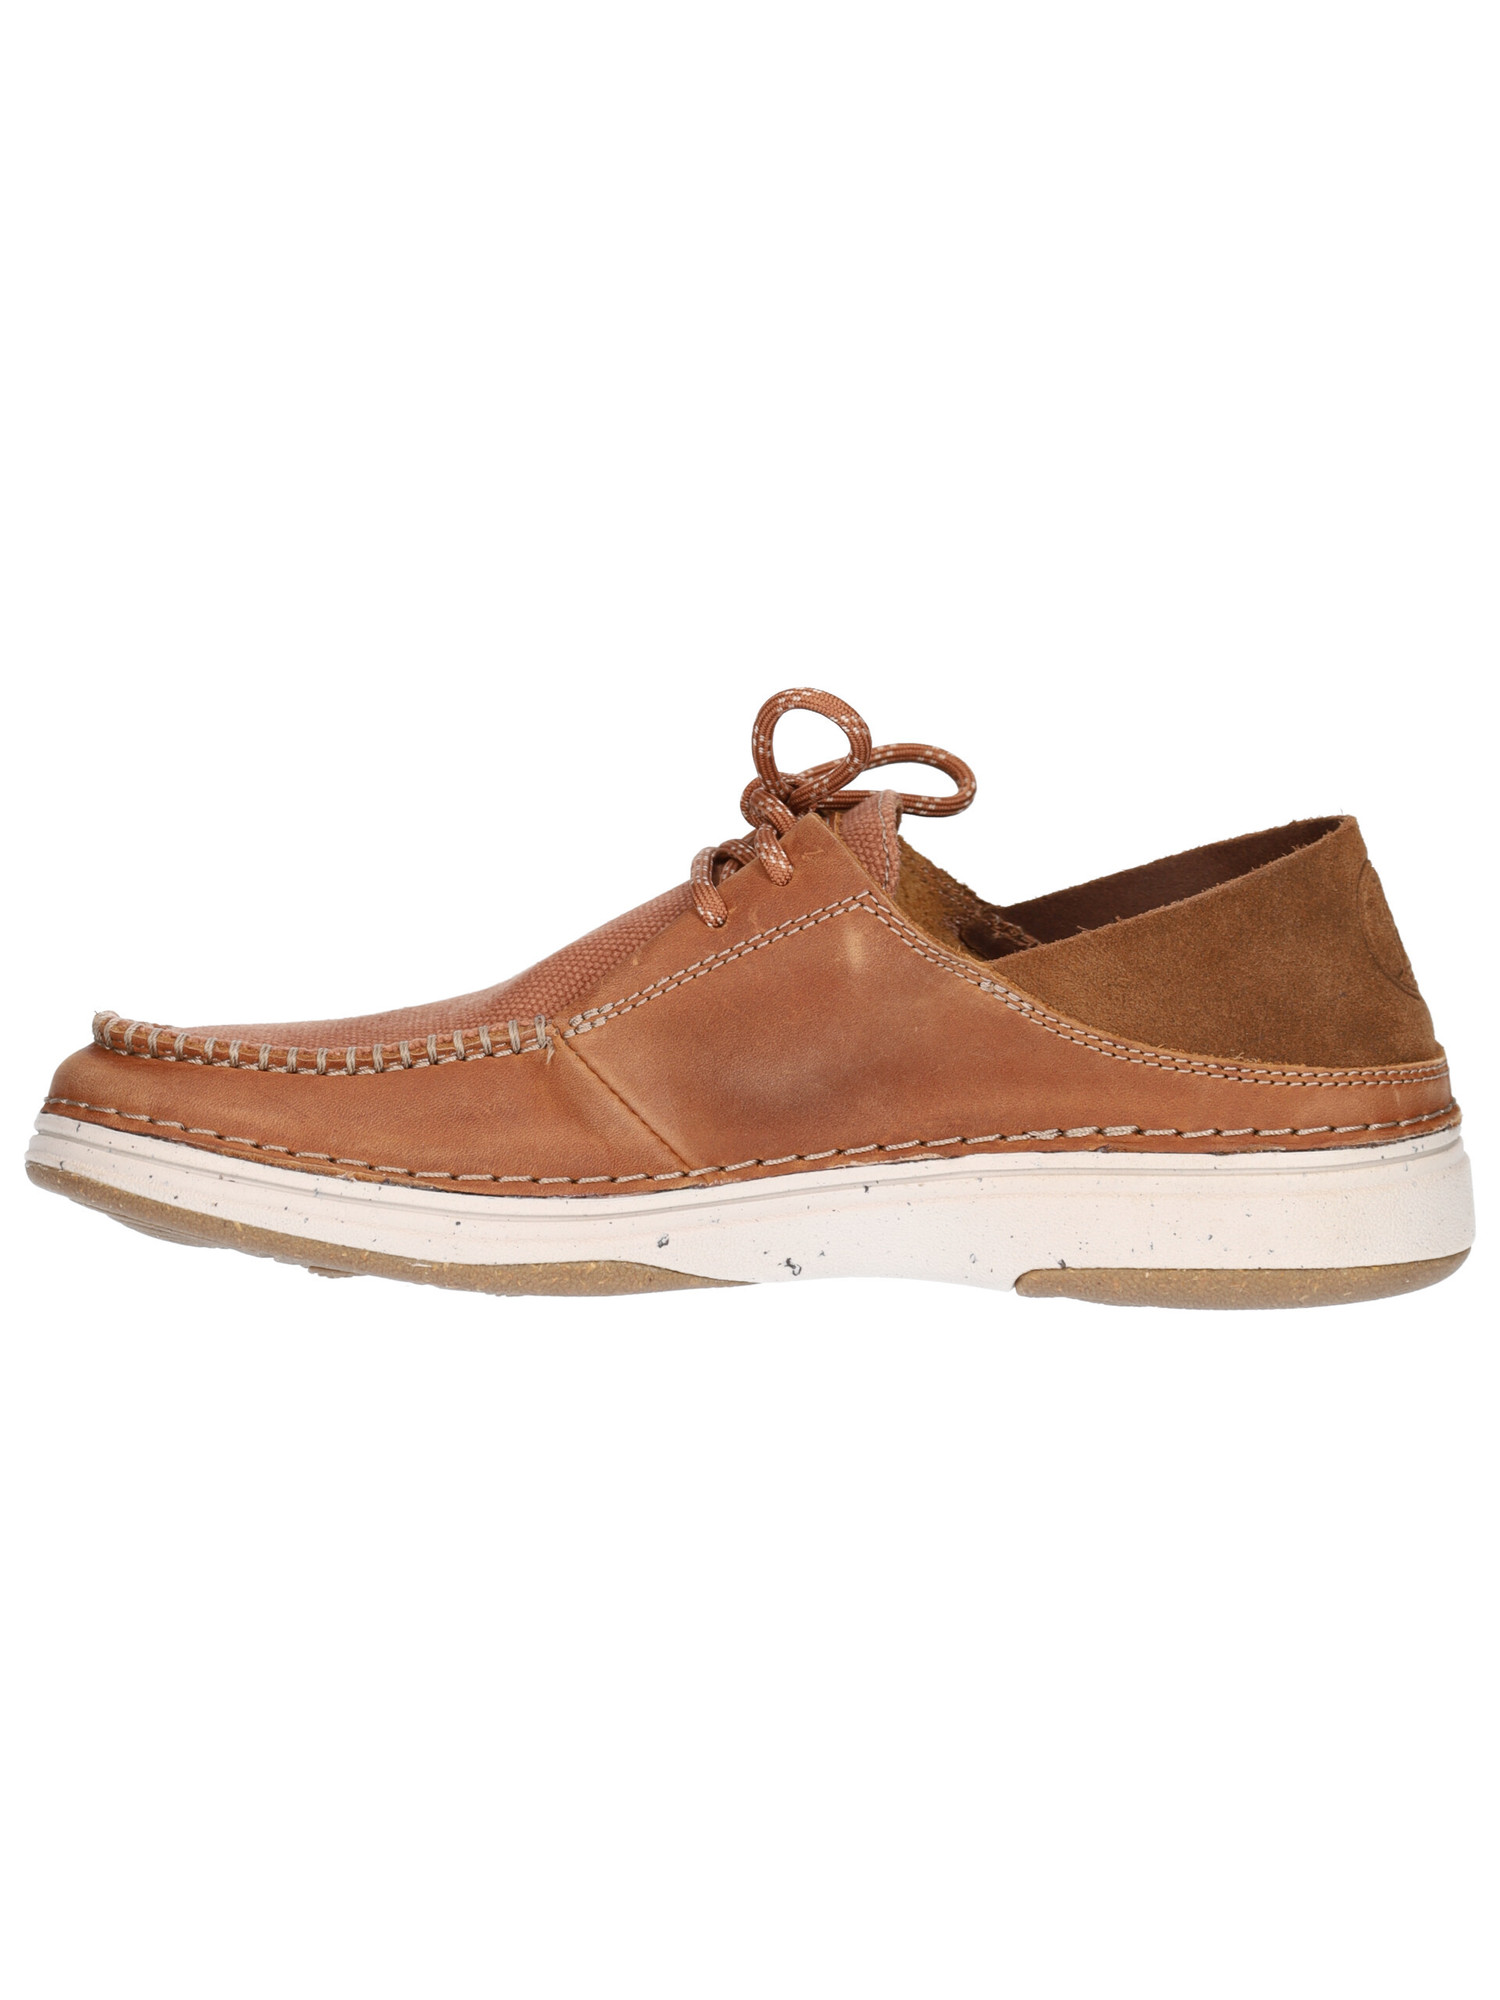 scarpa-casual-clarks-nature-5-moc-da-uomo-marrone